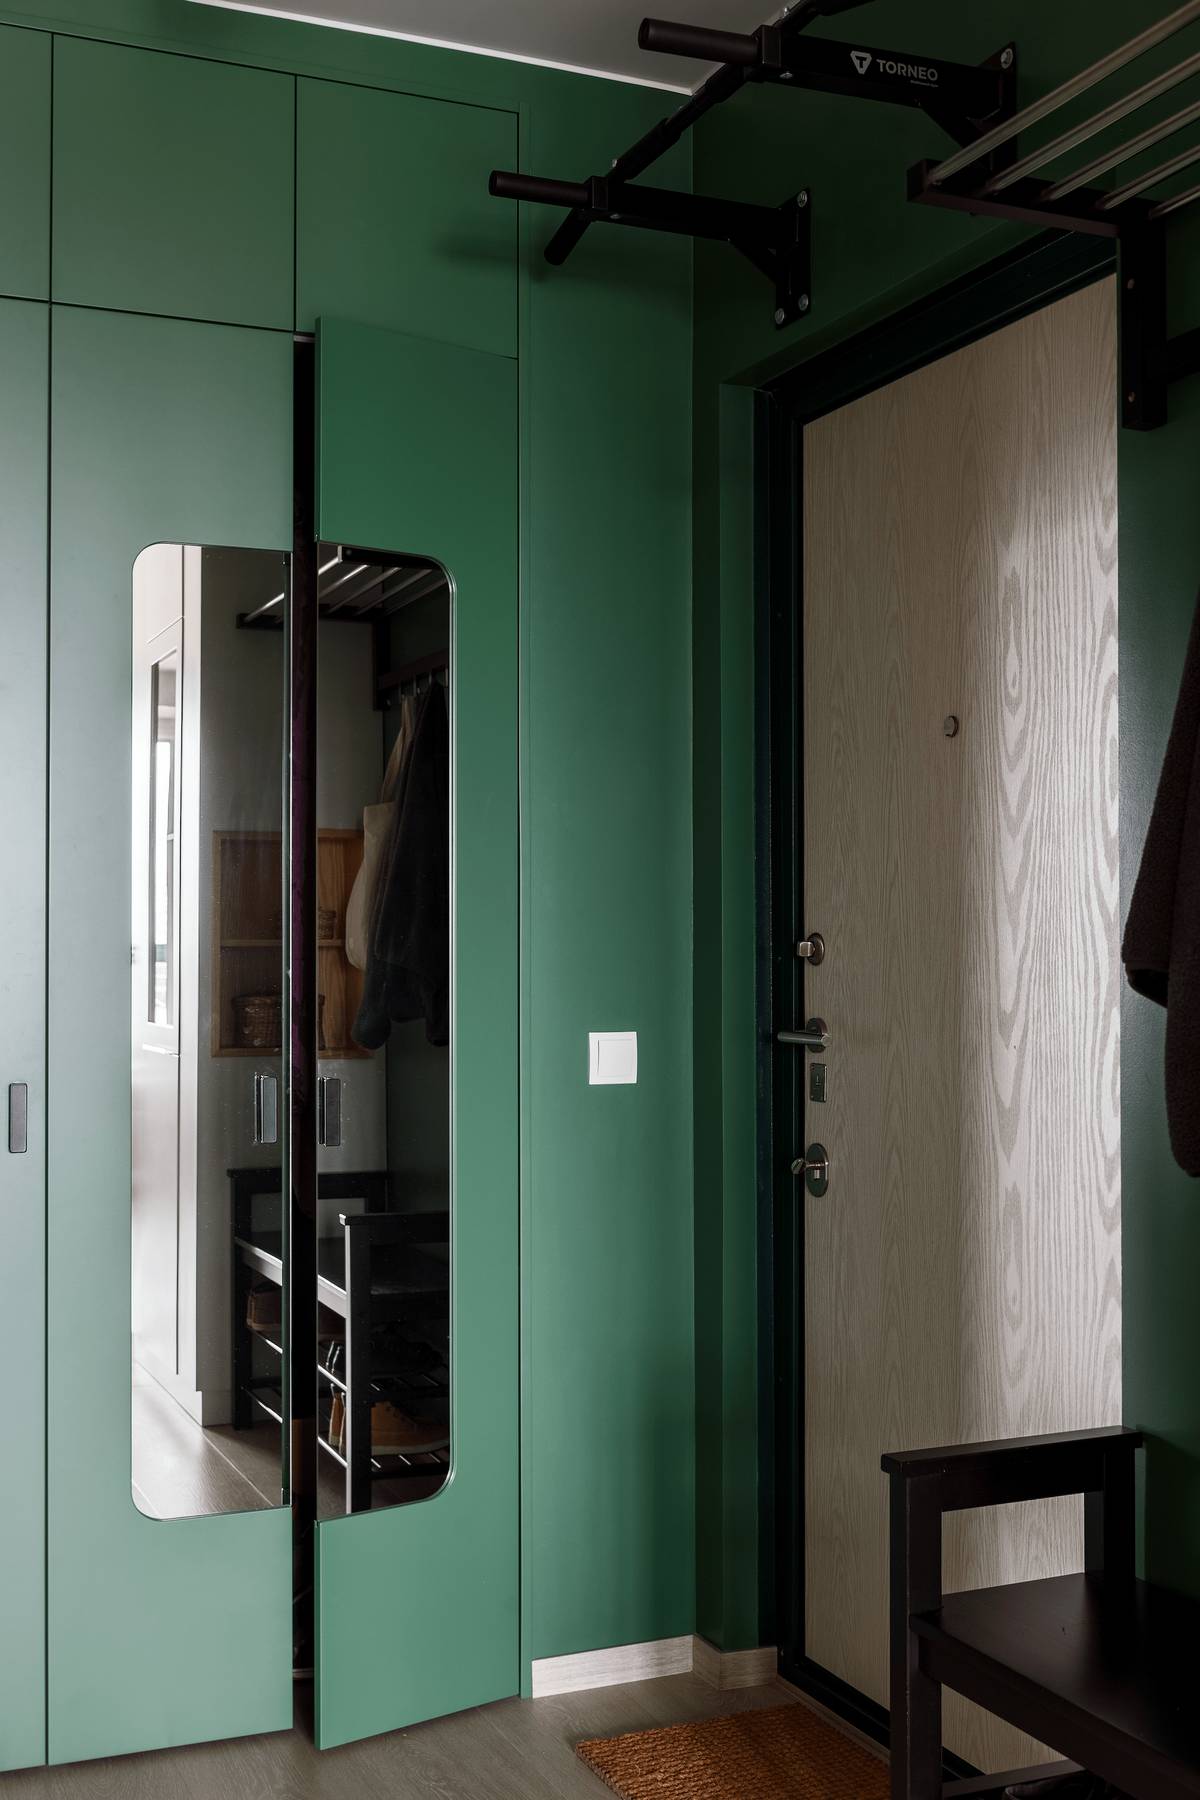 Lối vào căn hộ với cánh cửa gỗ sáng màu, nổi bật giữa chiếc tủ lưu trữ cao kịch trần sơn màu xanh ngọc lục bảo thời thượng. Cánh cửa tủ ốp gương soi cũng góp phần tạo cảm giác nới rộng khu vực này cho thị giác.